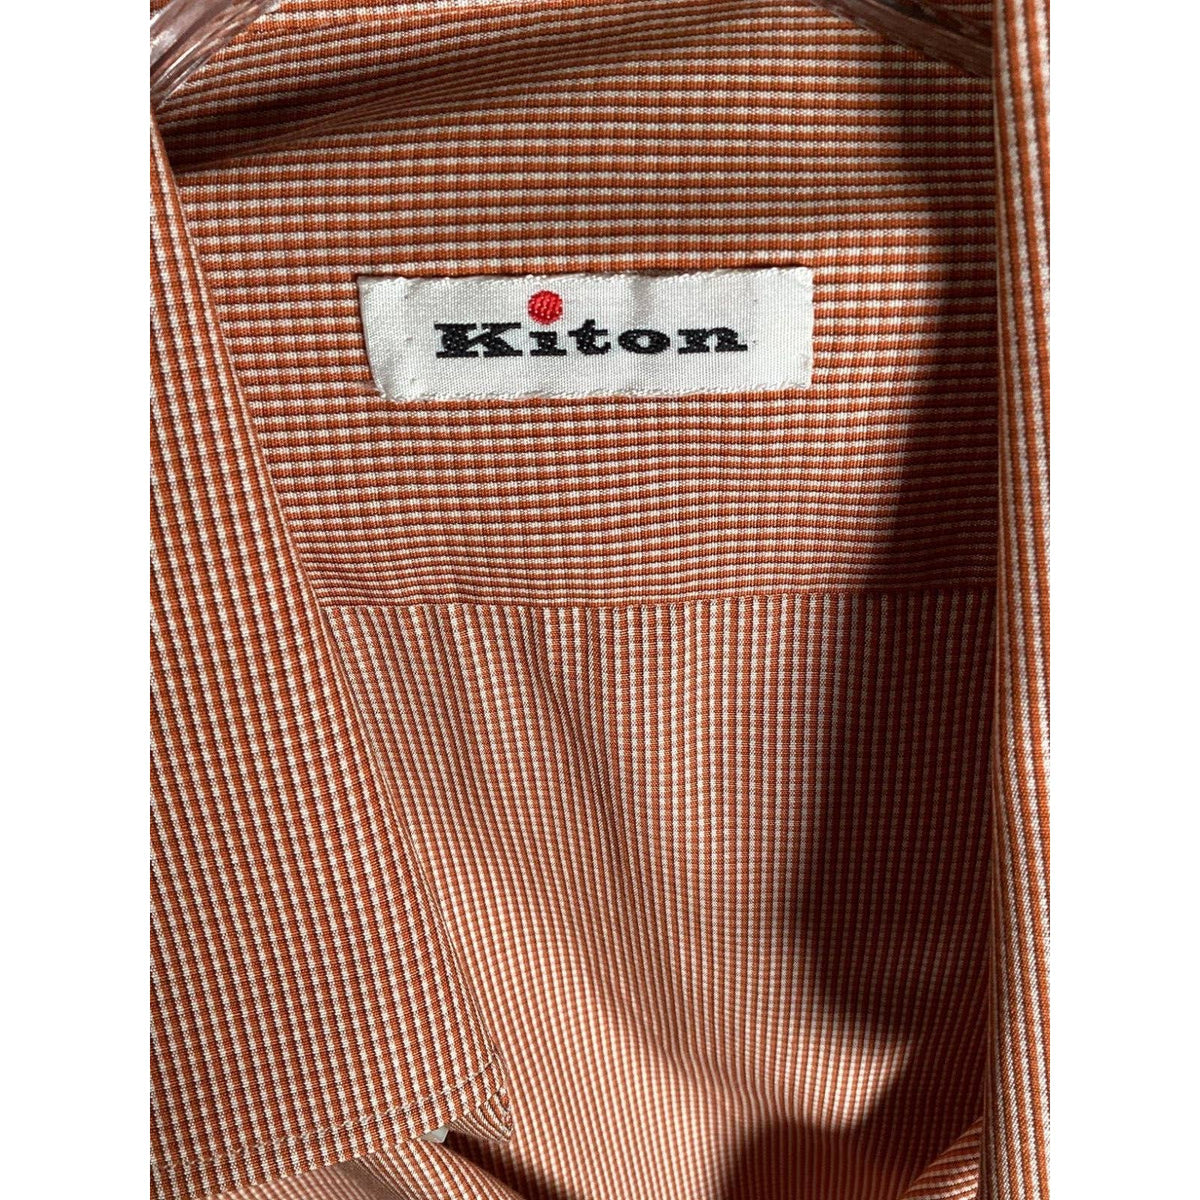 Kiton Orange Button Down Shirt Sz. 16